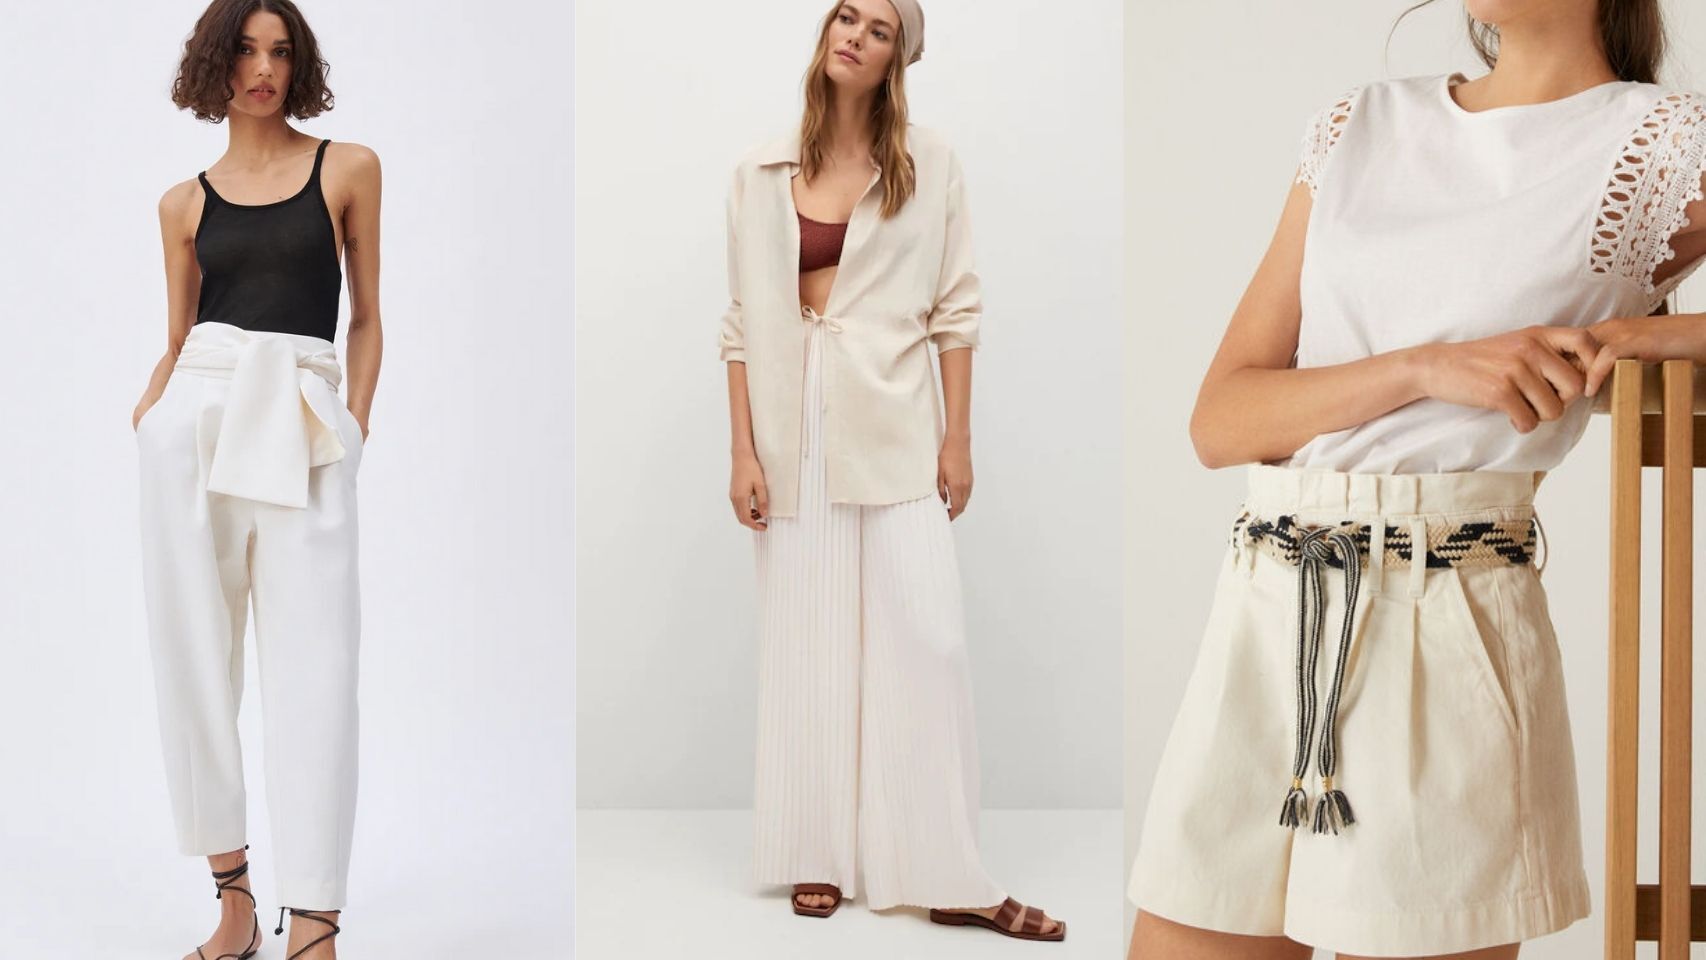 Pantalón blanco, la prenda 'trendy' que mejor estiliza tu figura (por menos de 40 euros)